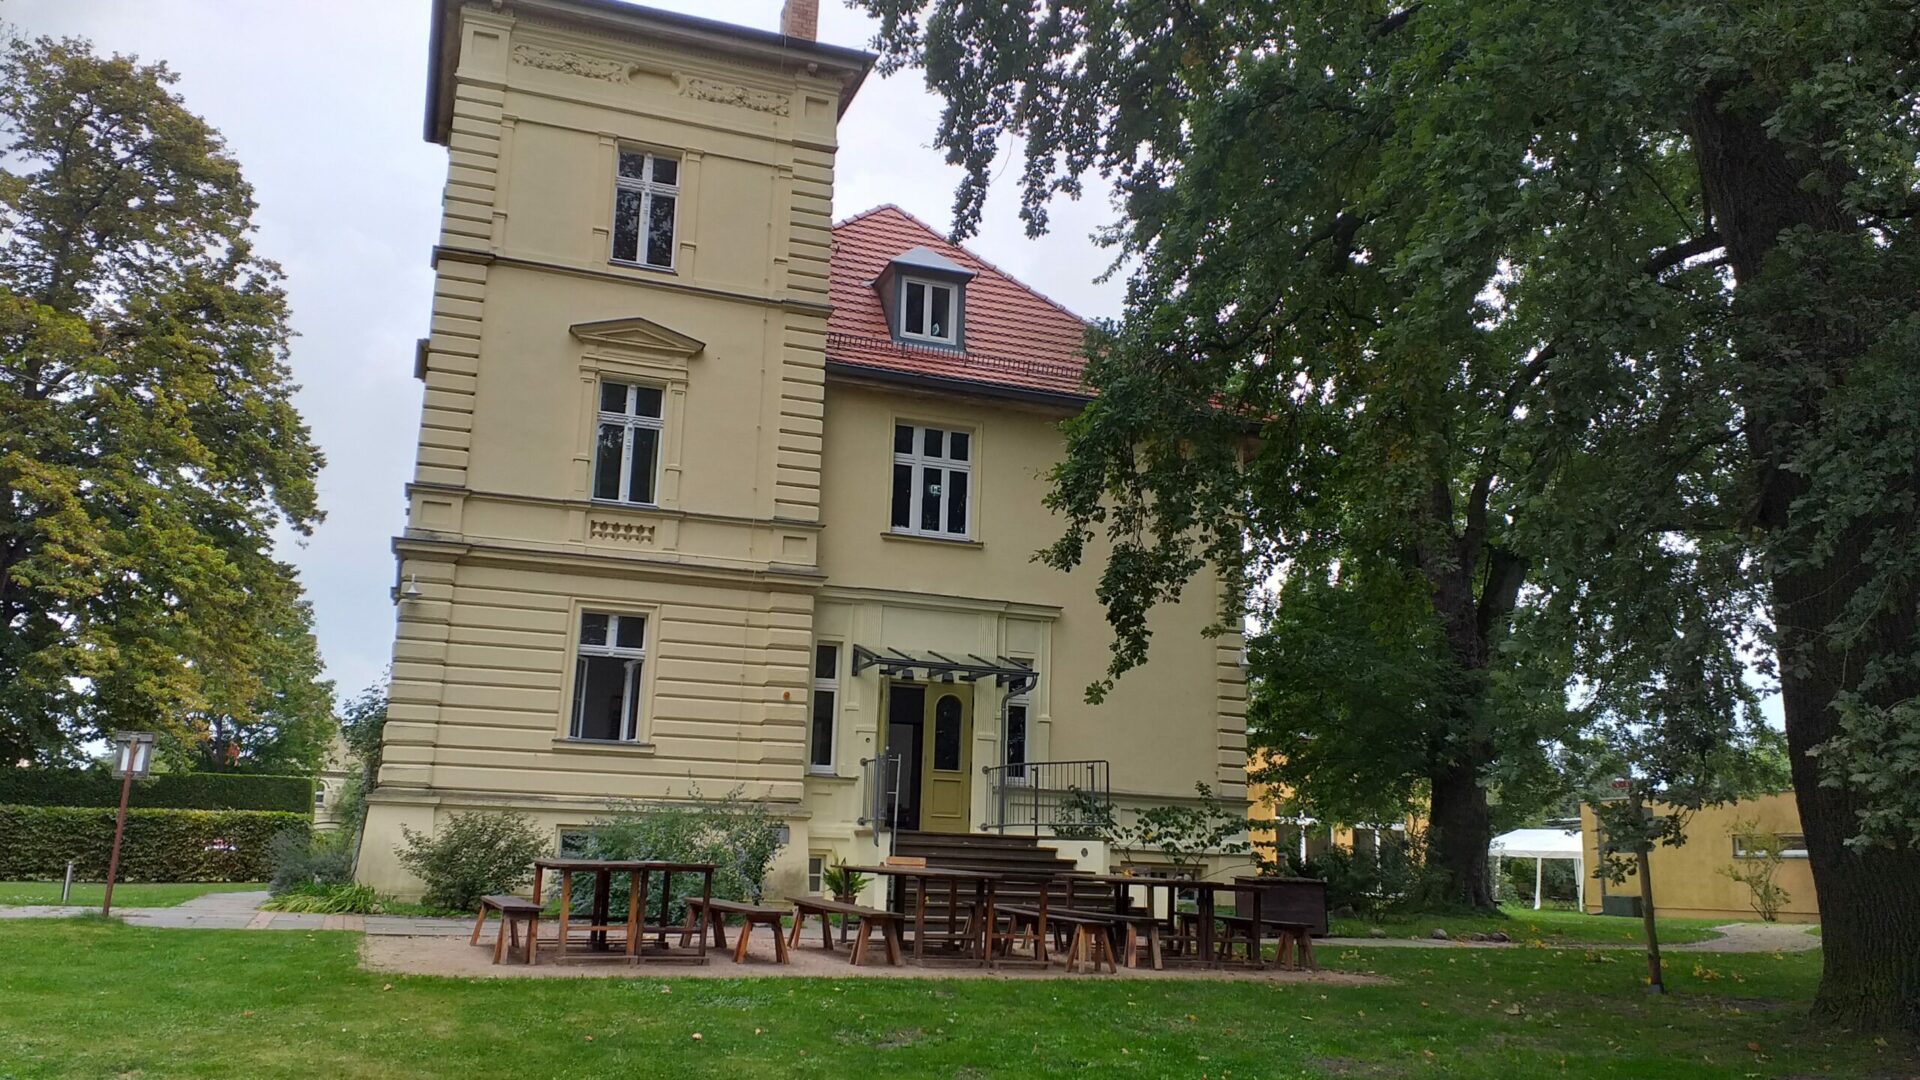 12 von 12 im September 2021 findet in der Villa Fohrde in Havelsee in Brandenburg statt.